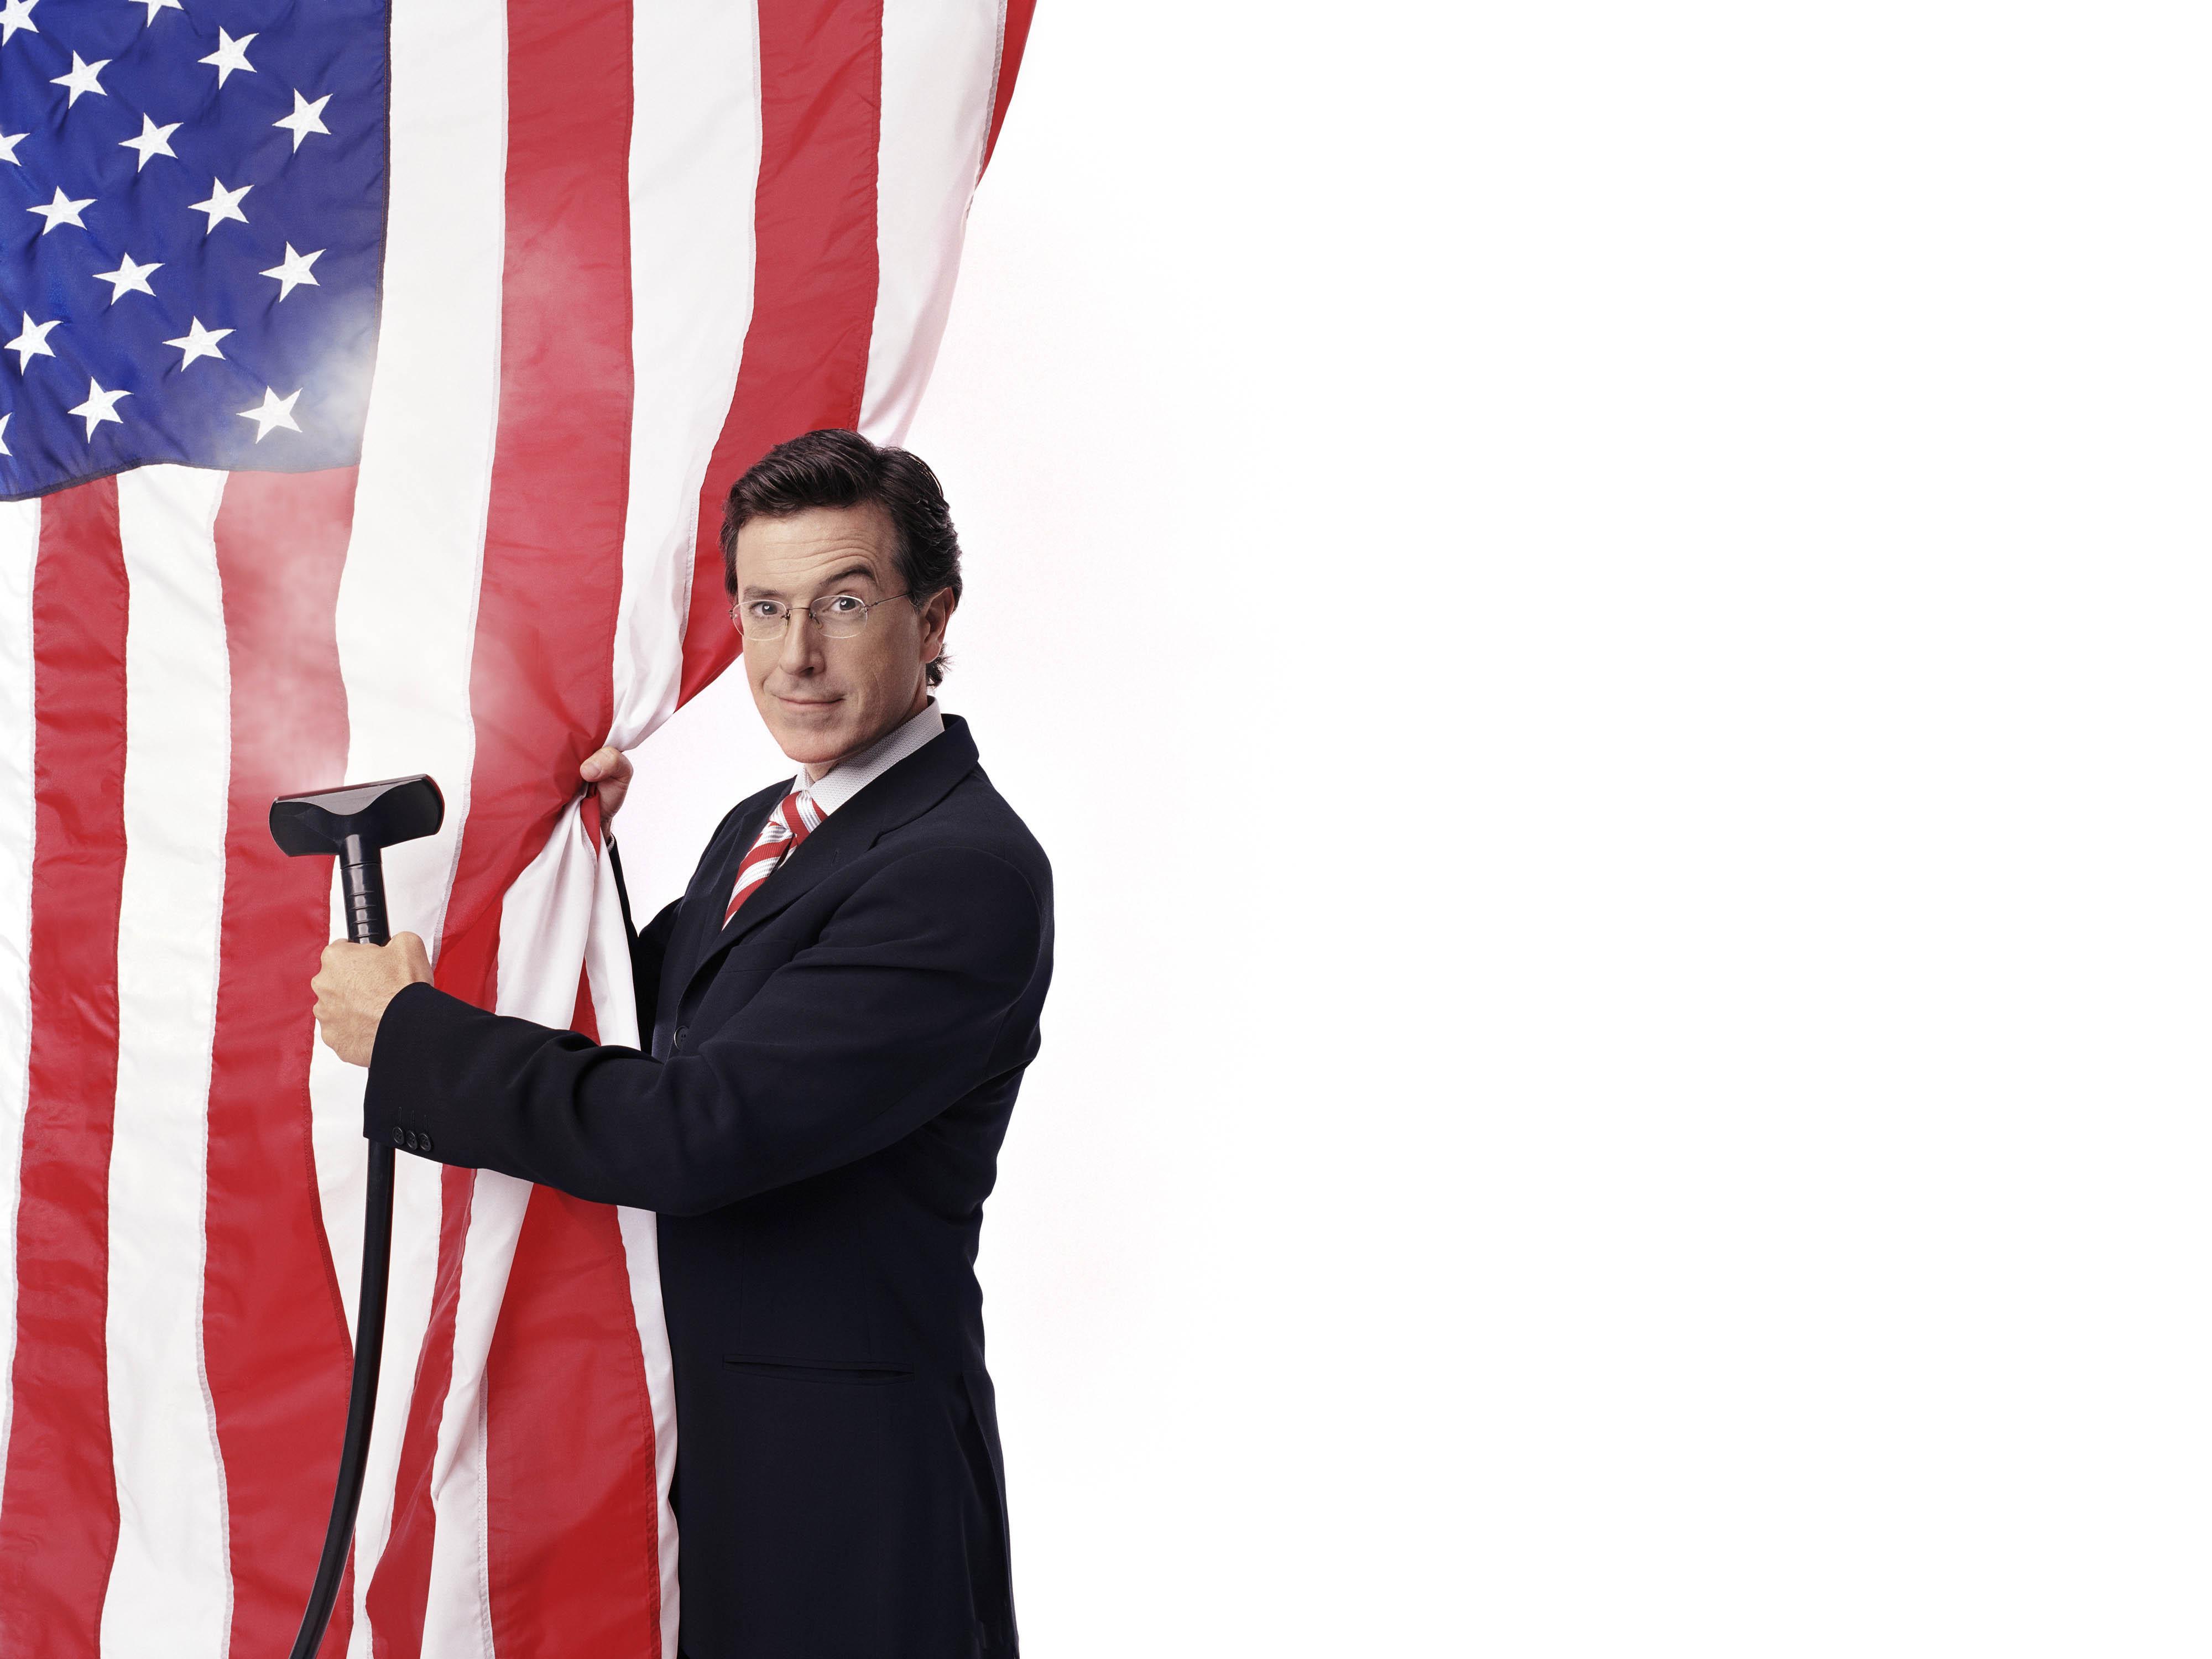 Melhores papéis de parede de The Colbert Report para tela do telefone